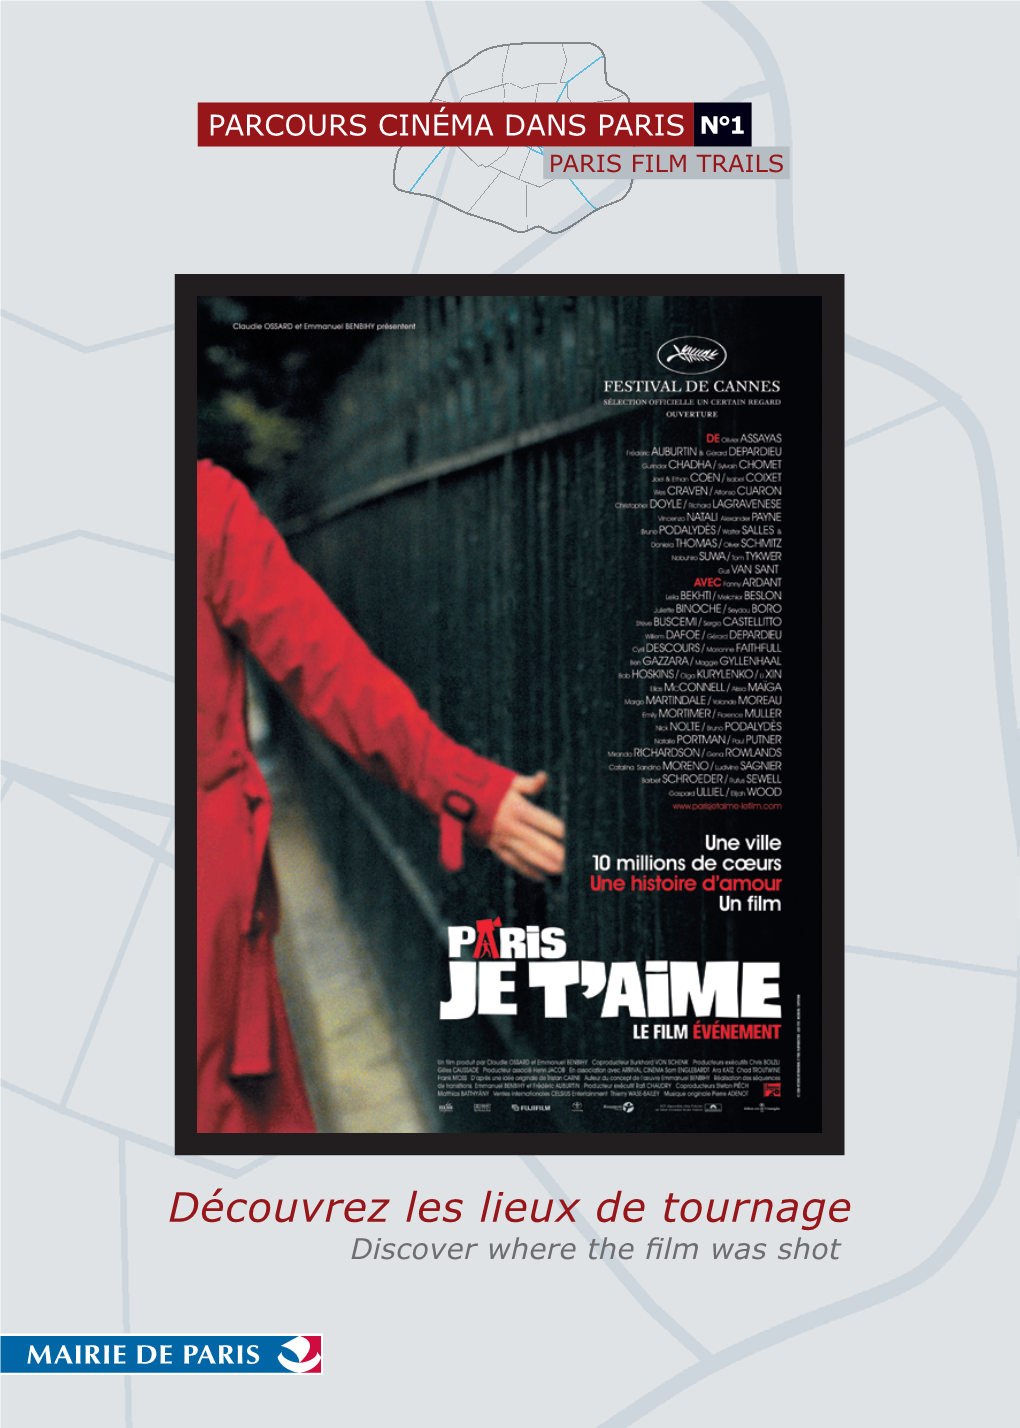 Découvrez Les Lieux De Tournage Discover Where the ﬁ Lm Was Shot PARCOURS CINÉMA DANS PARIS N°1 PARIS FILM TRAILS